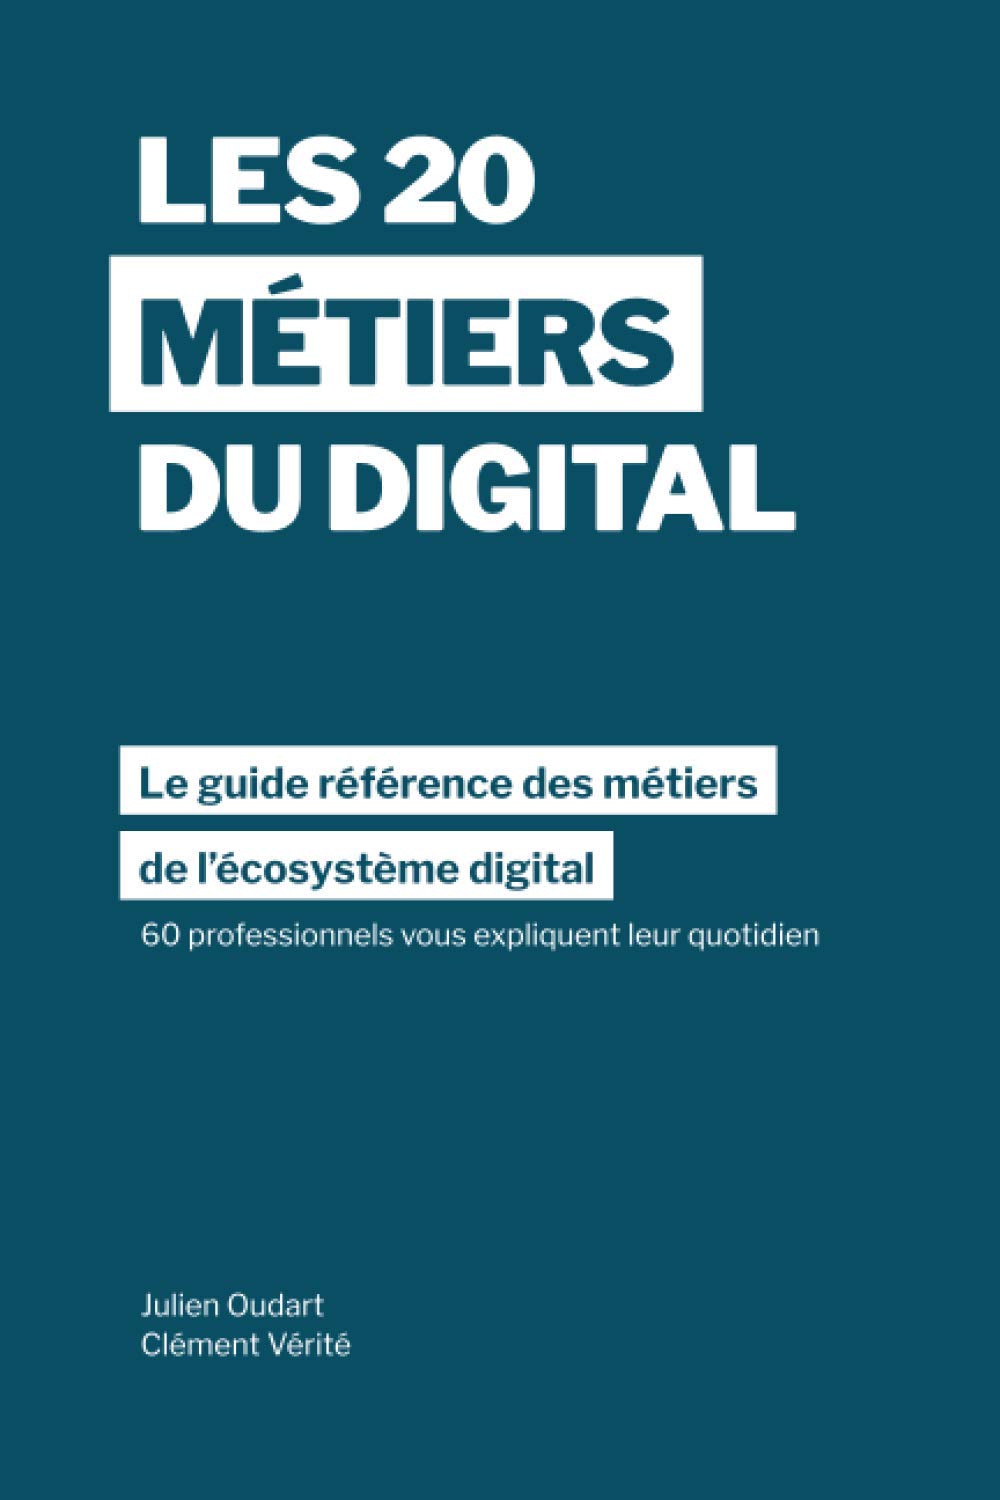 Les 20 métiers du digital: Le guide référence des métiers dans l’écosystème digital à travers les témoignages de 60 professionnels dans plus de 15 pays